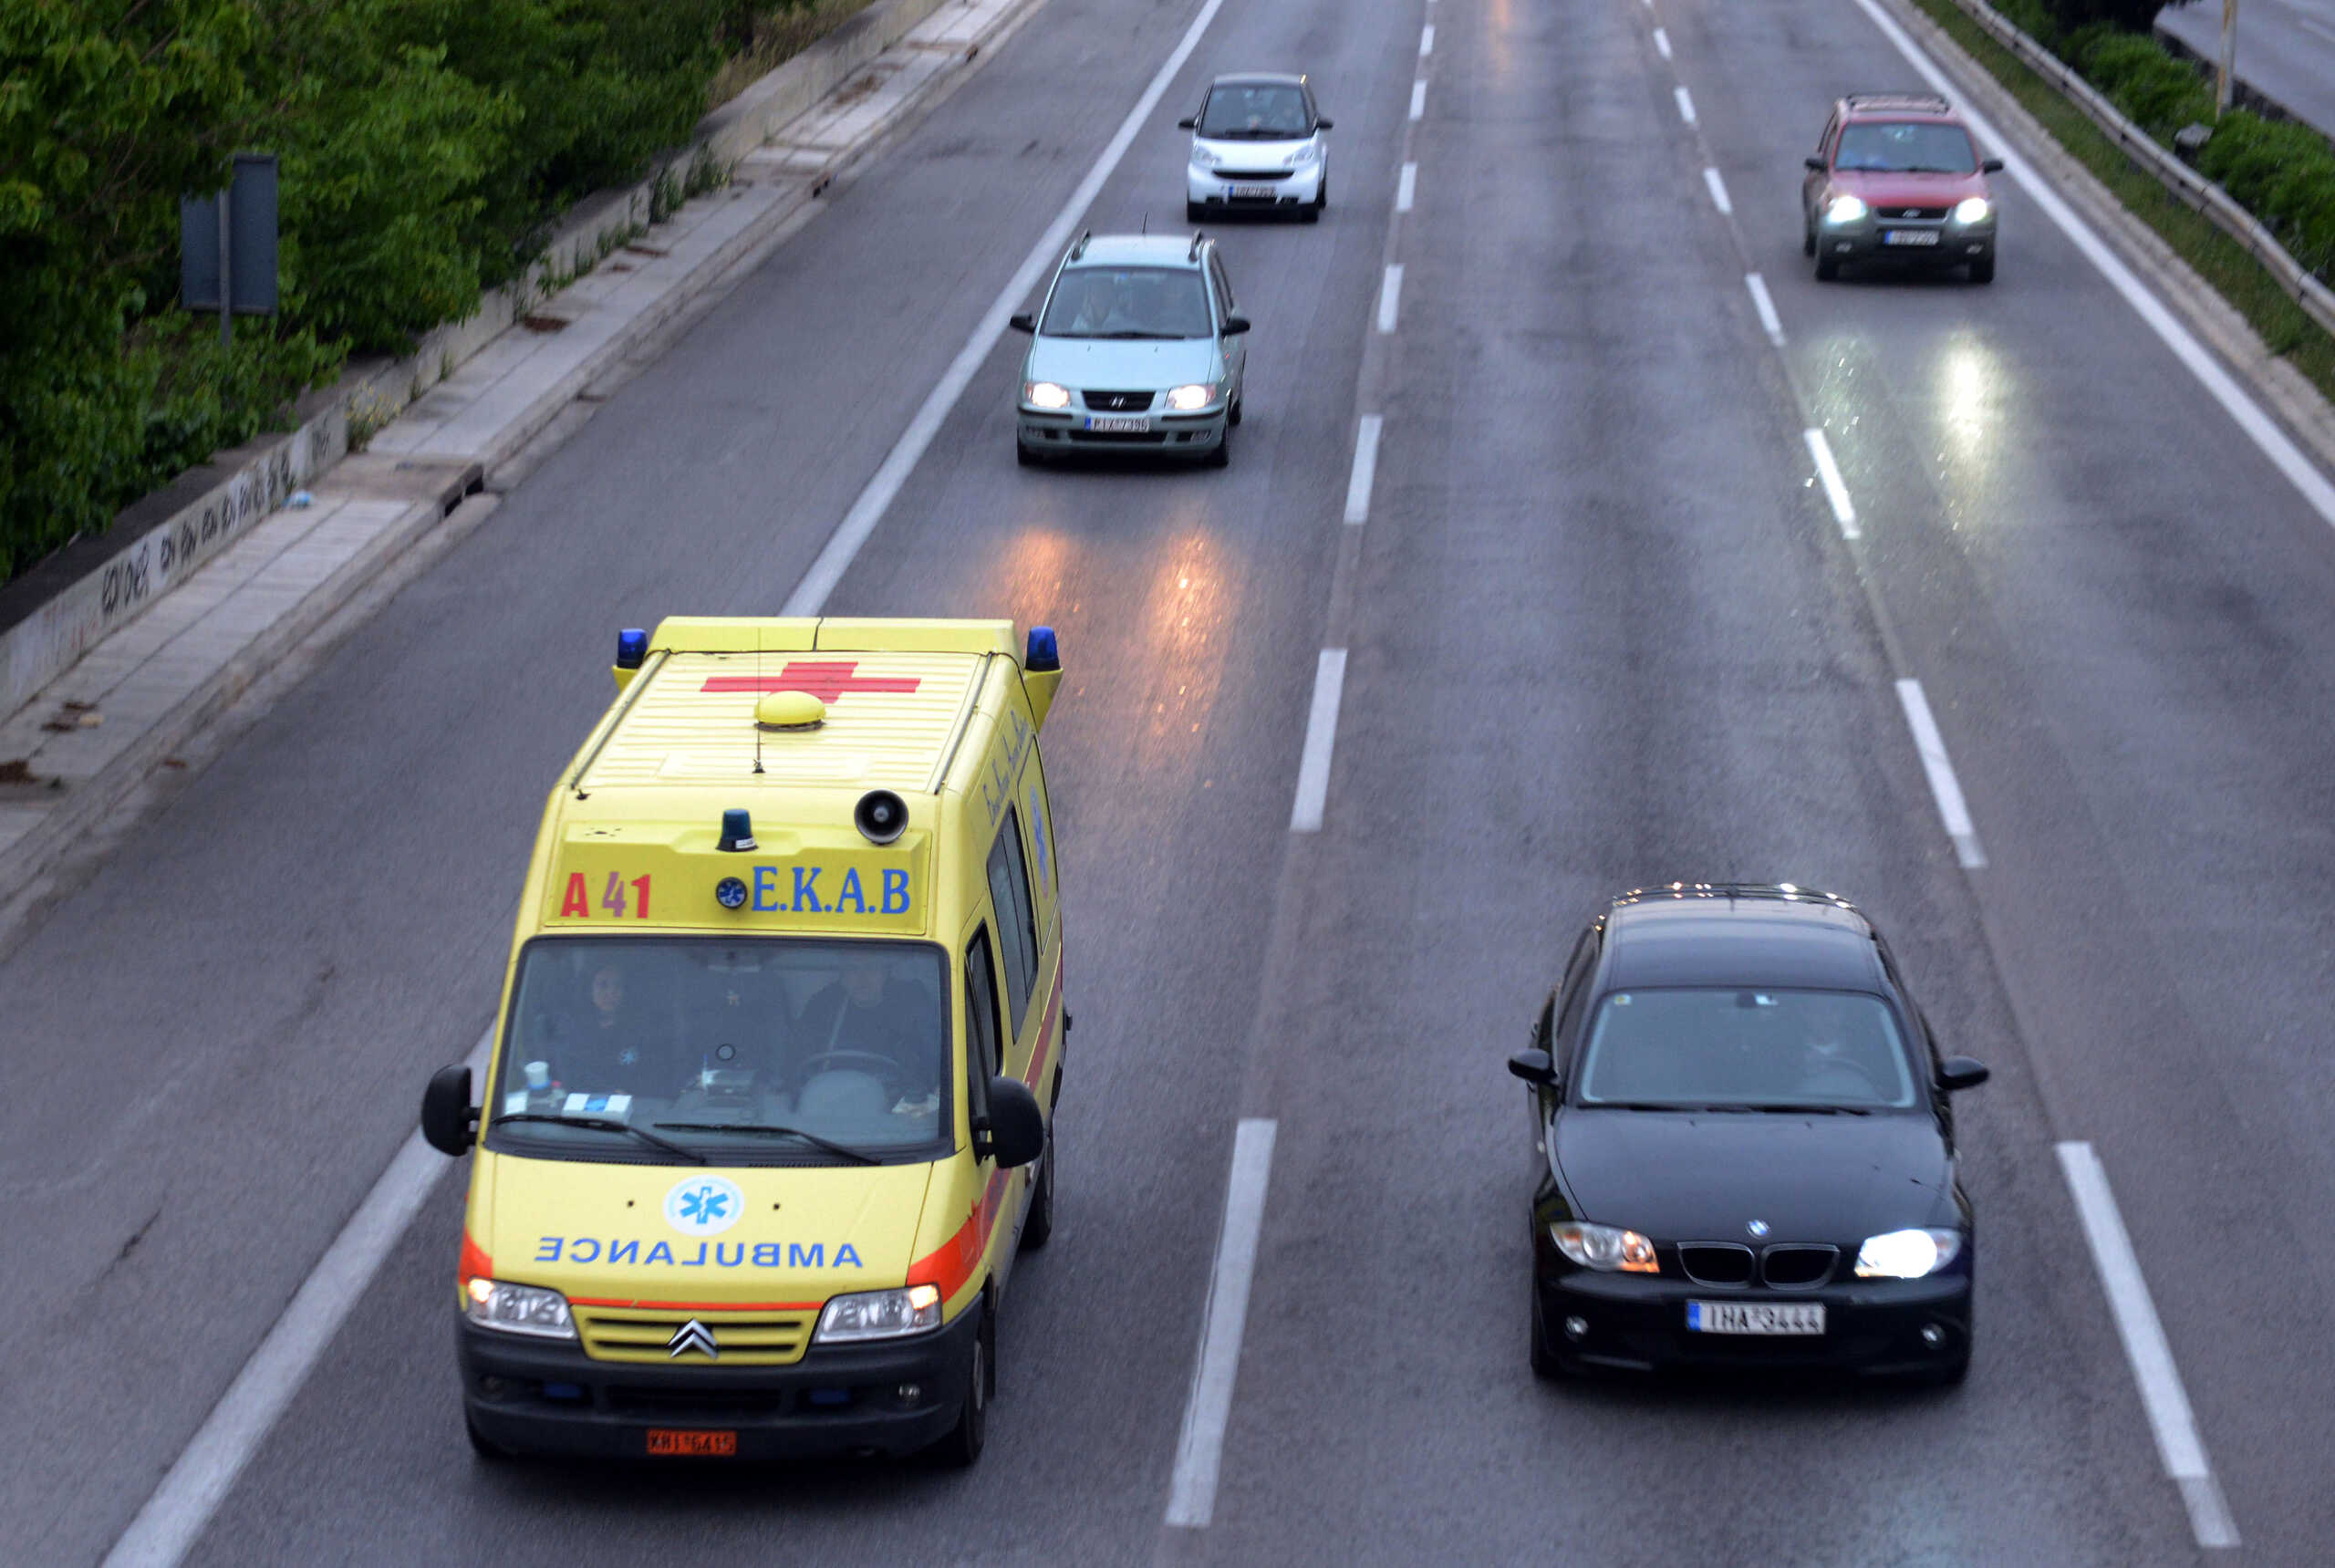 BOAK: Τραυματισμός οδηγού σε τροχαίο – Το αυτοκίνητο «καρφώθηκε» στο διαχωριστικό στηθαίο